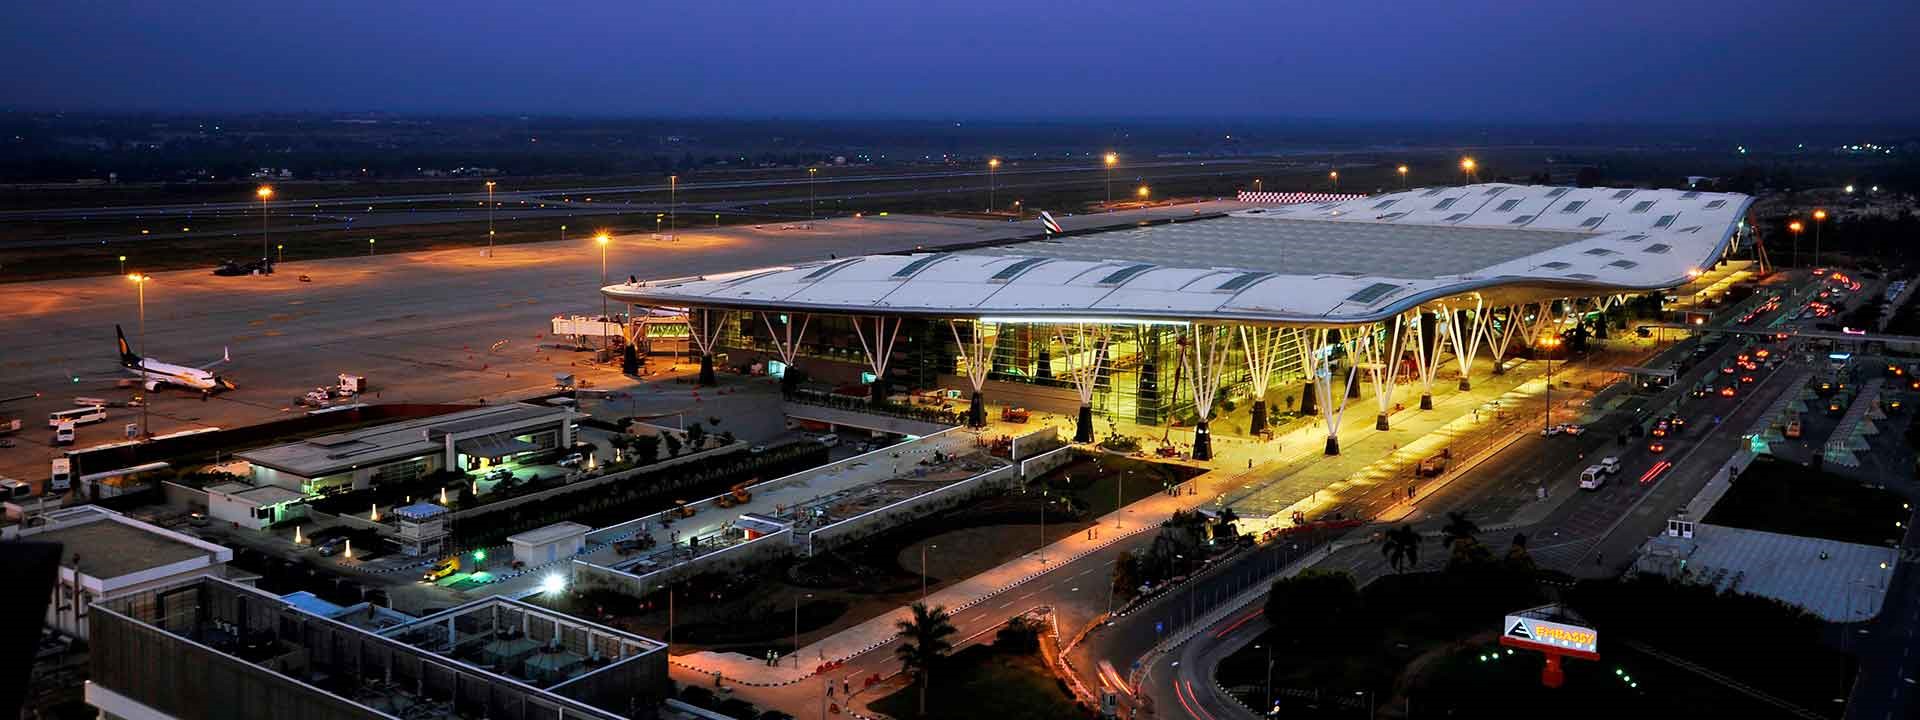 Bengaluru International Airport – T1